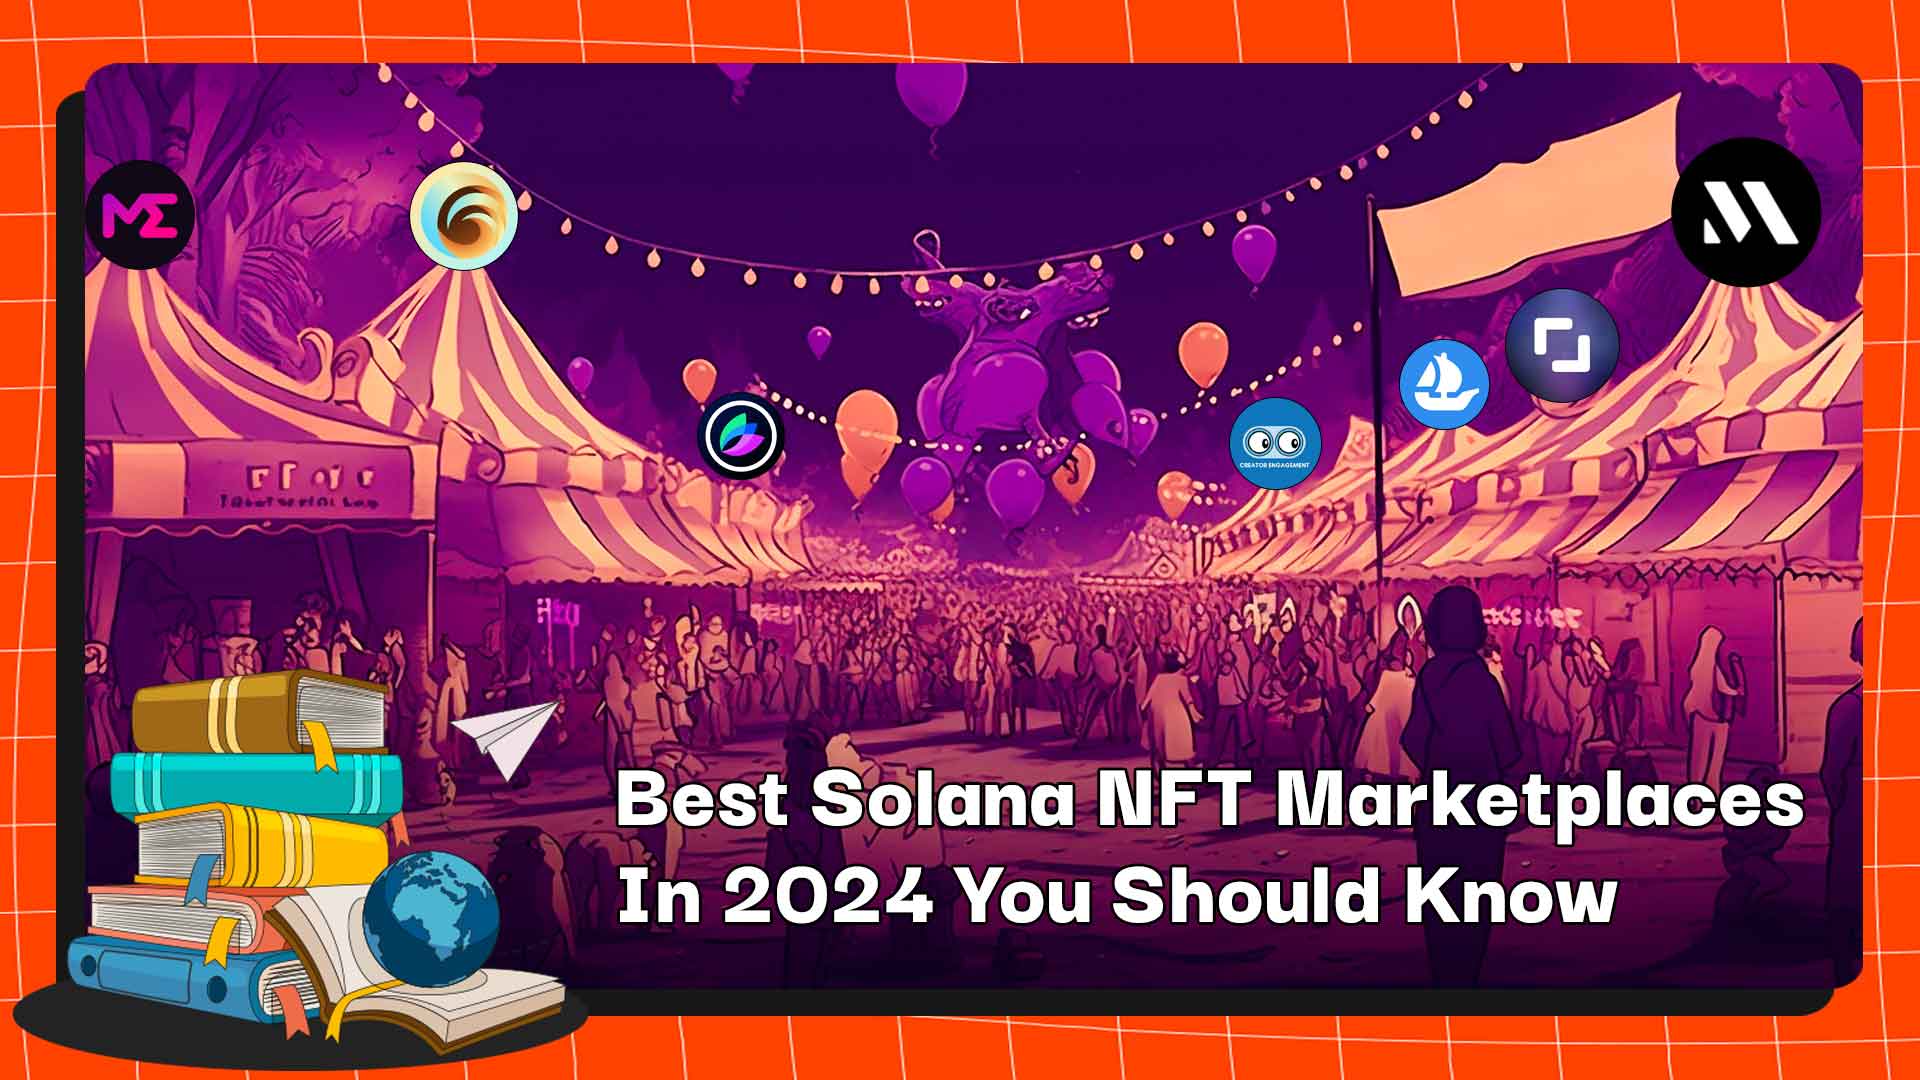 Лучшие торговые площадки Solana NFT в 2024 году, которые вы должны знать